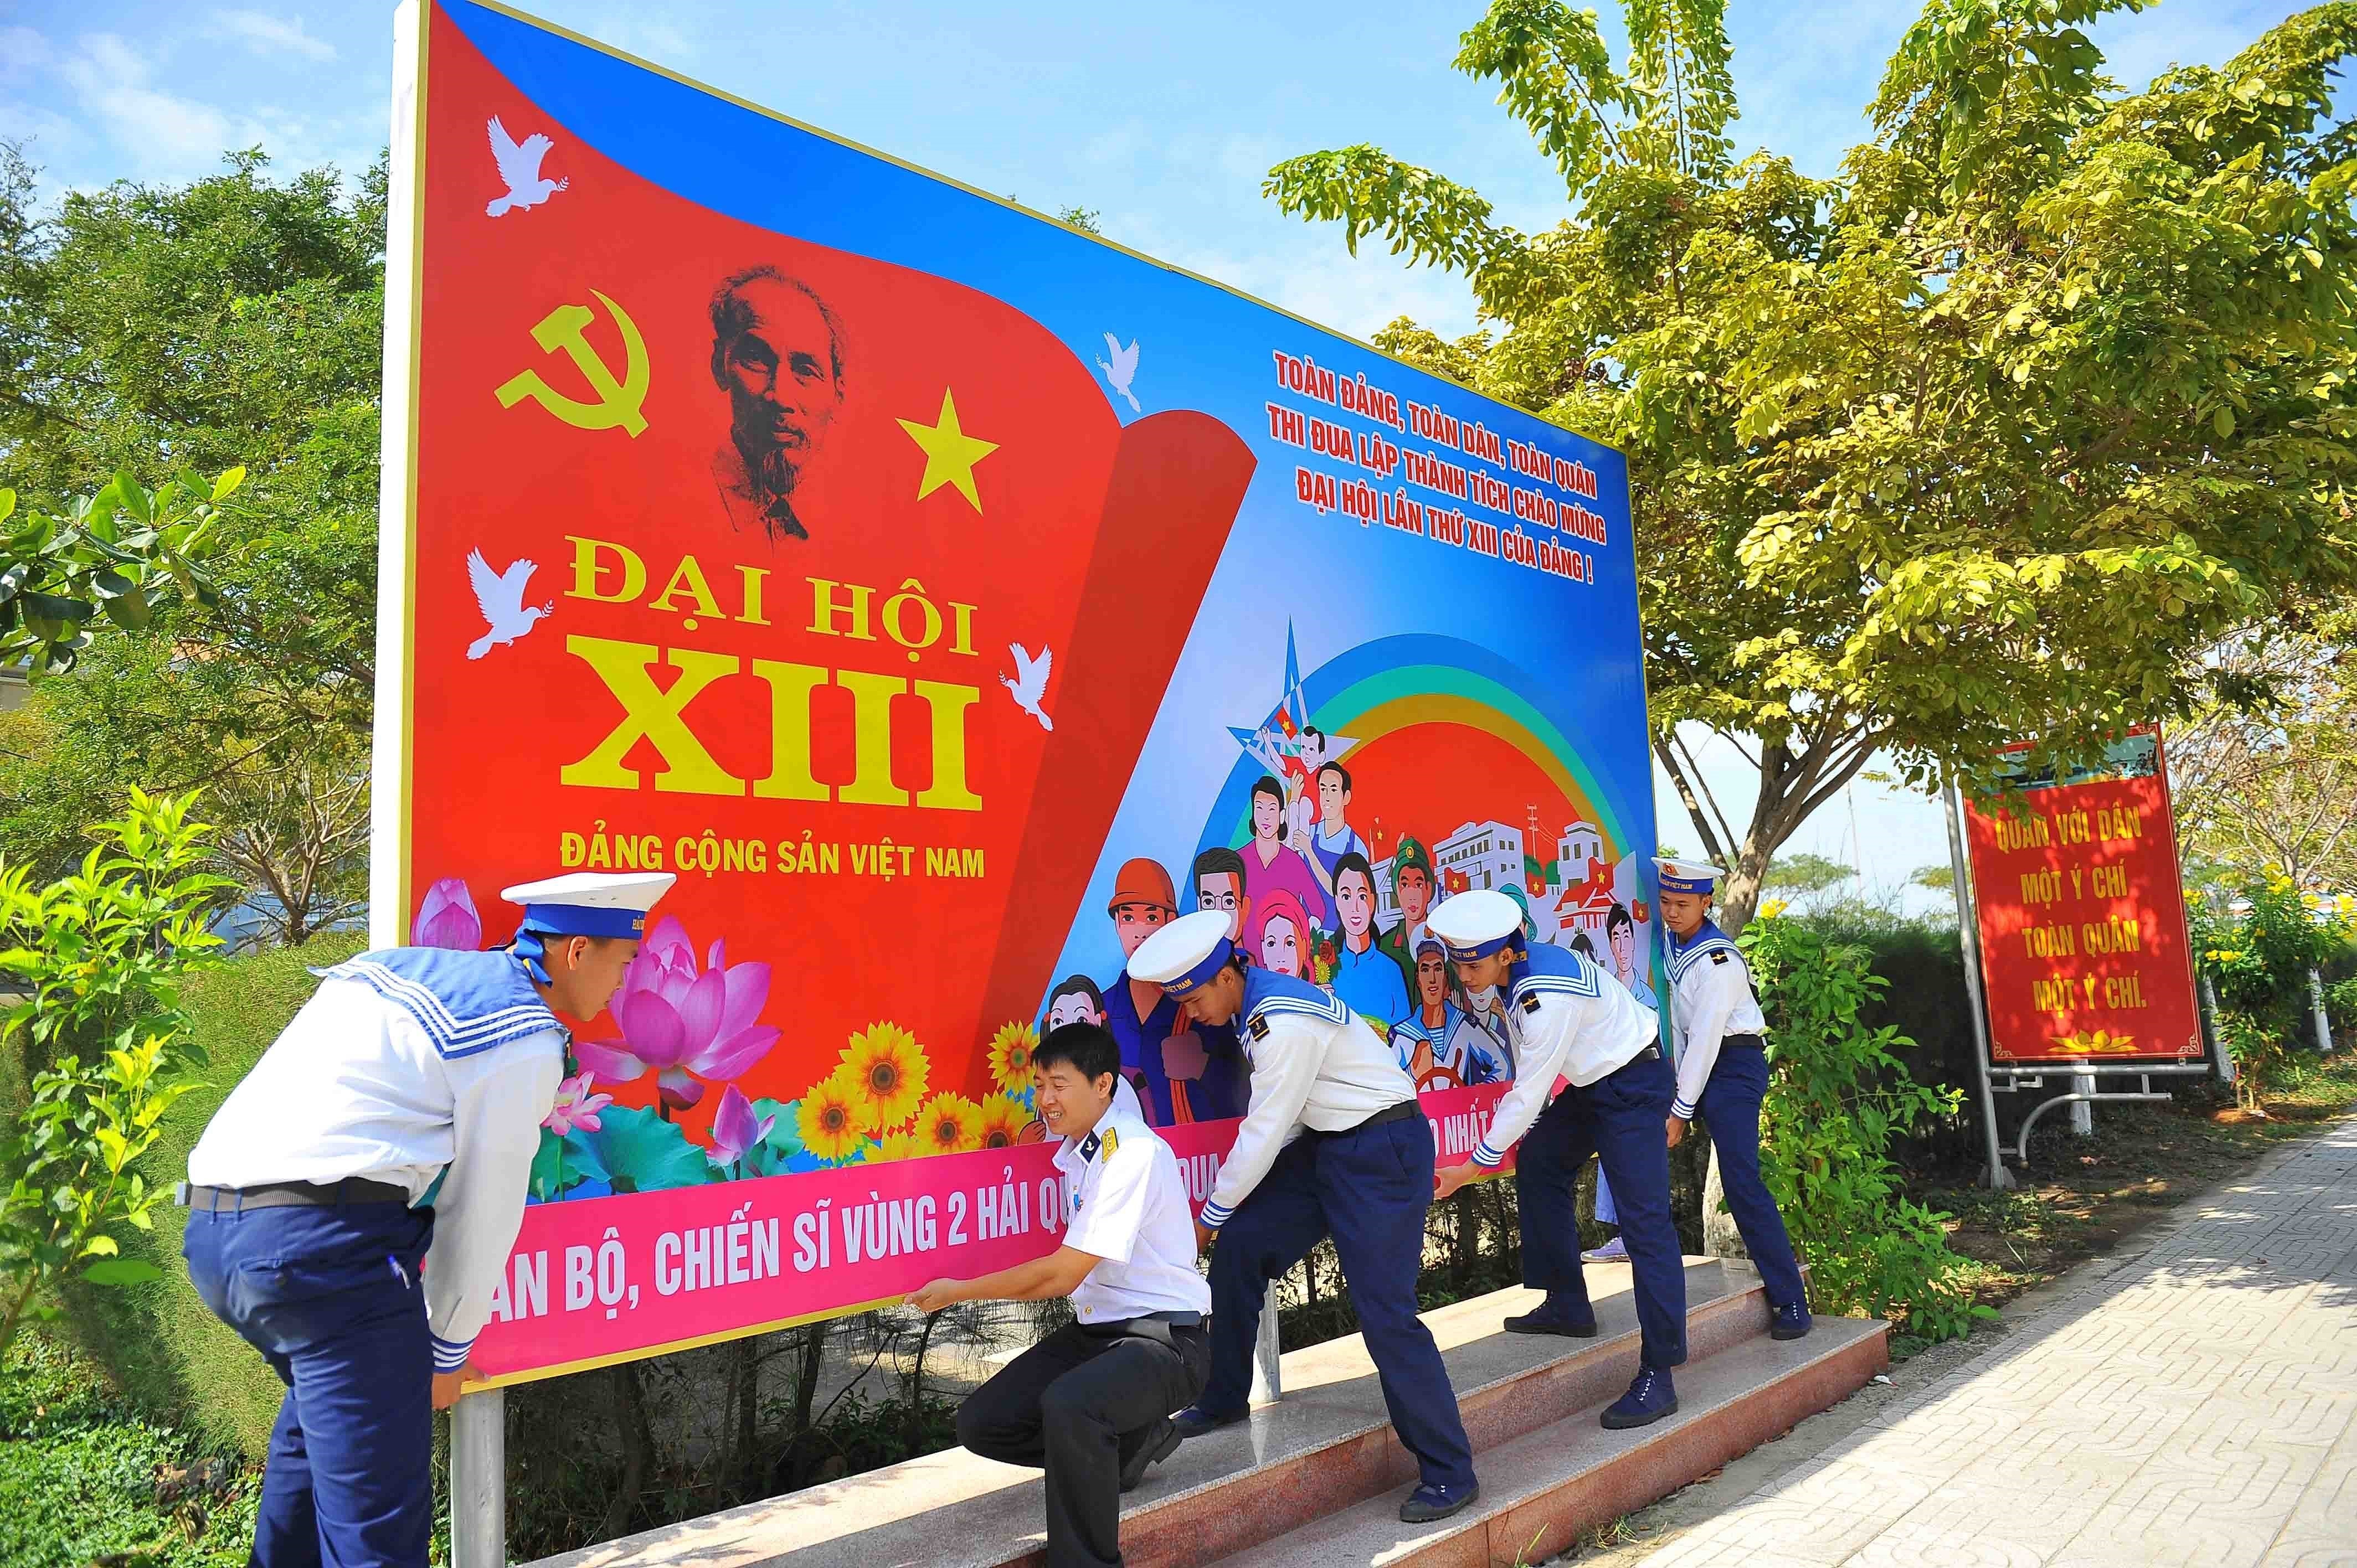 Các chiến sỹ Vùng 2 Hải quân với công tác trang trí, tuyên truyền, cổ động Đại hội XIII bằng panô, khẩu hiệu, bảng ảnh trong đơn vị